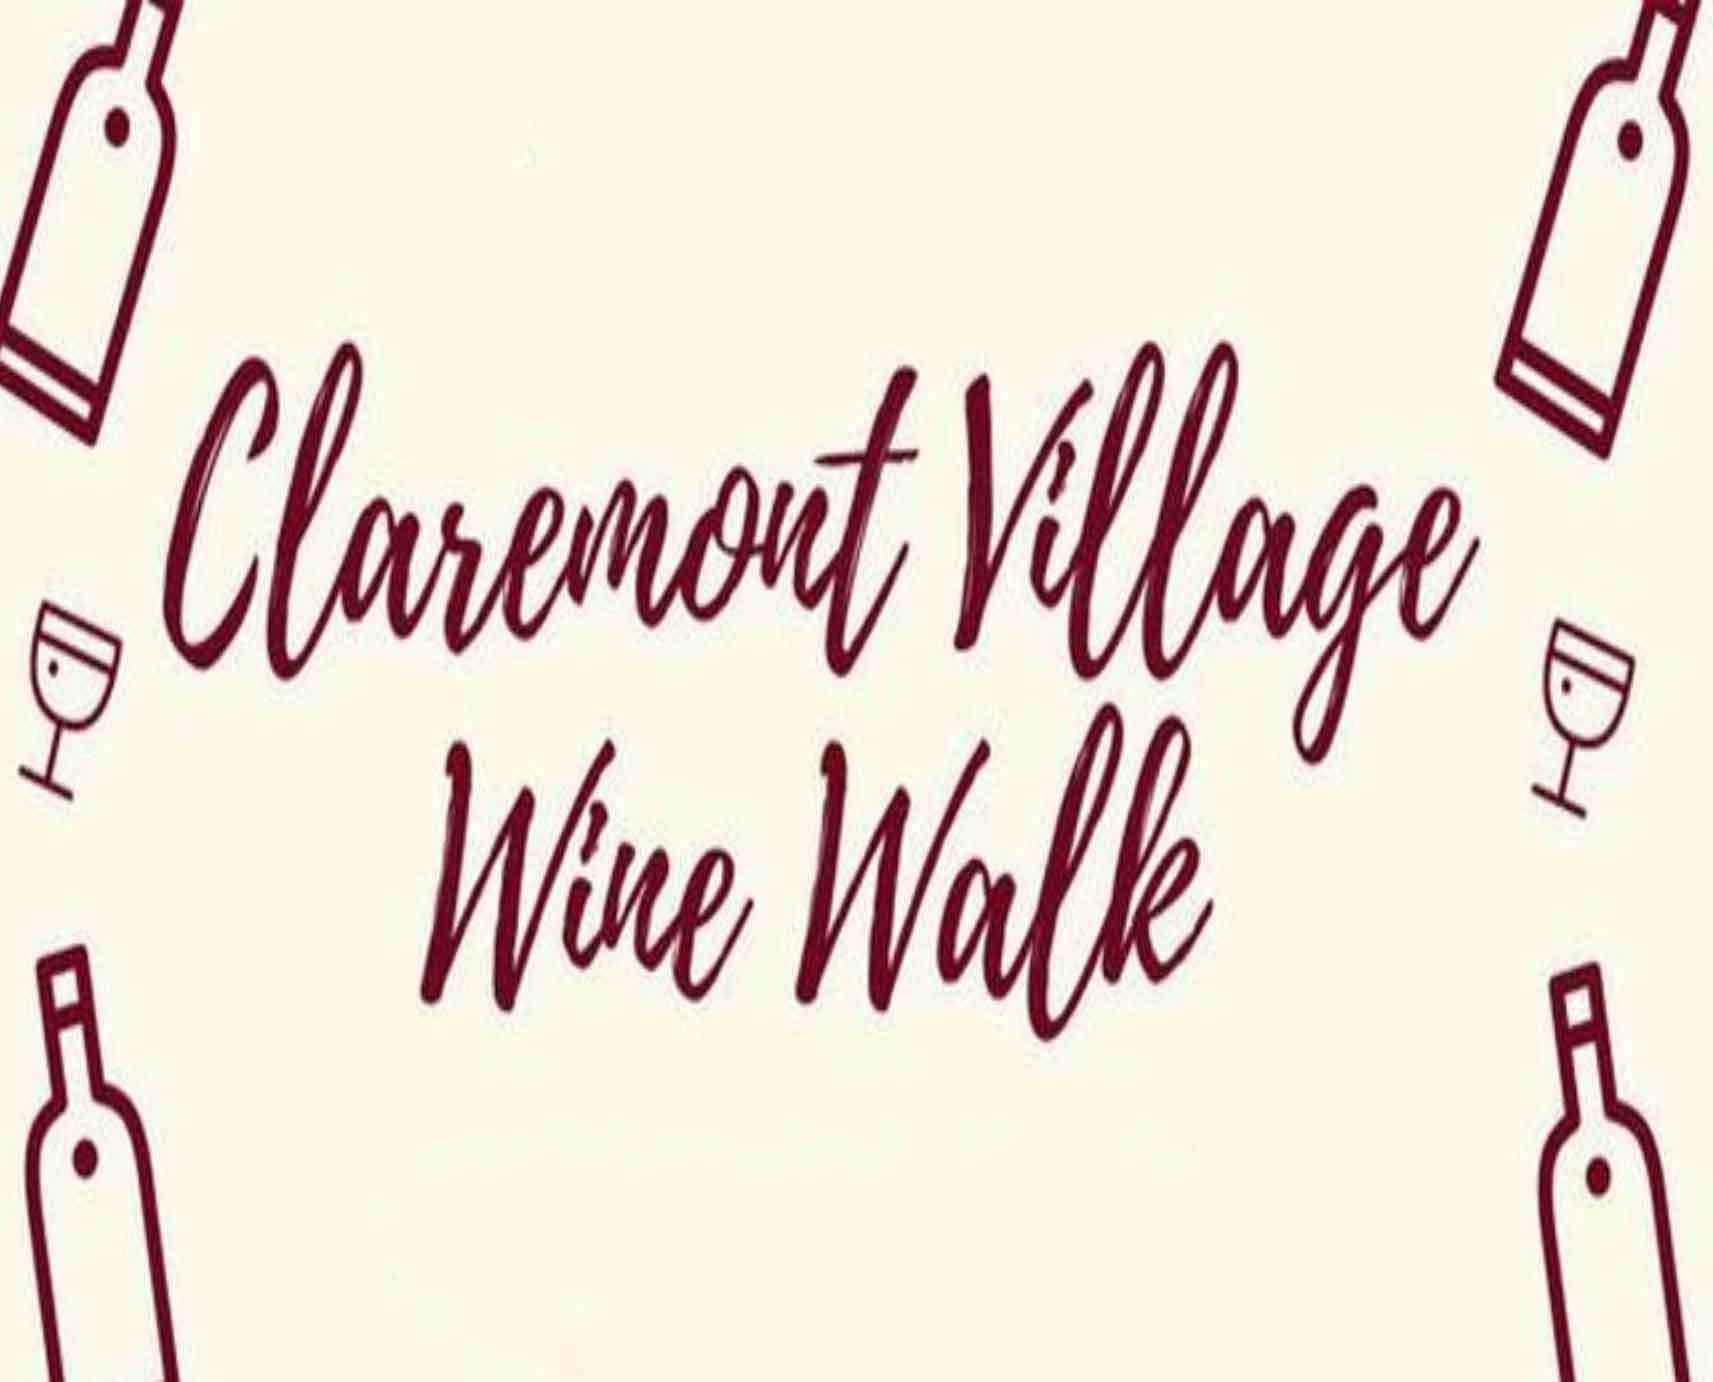 claremont village wine walk